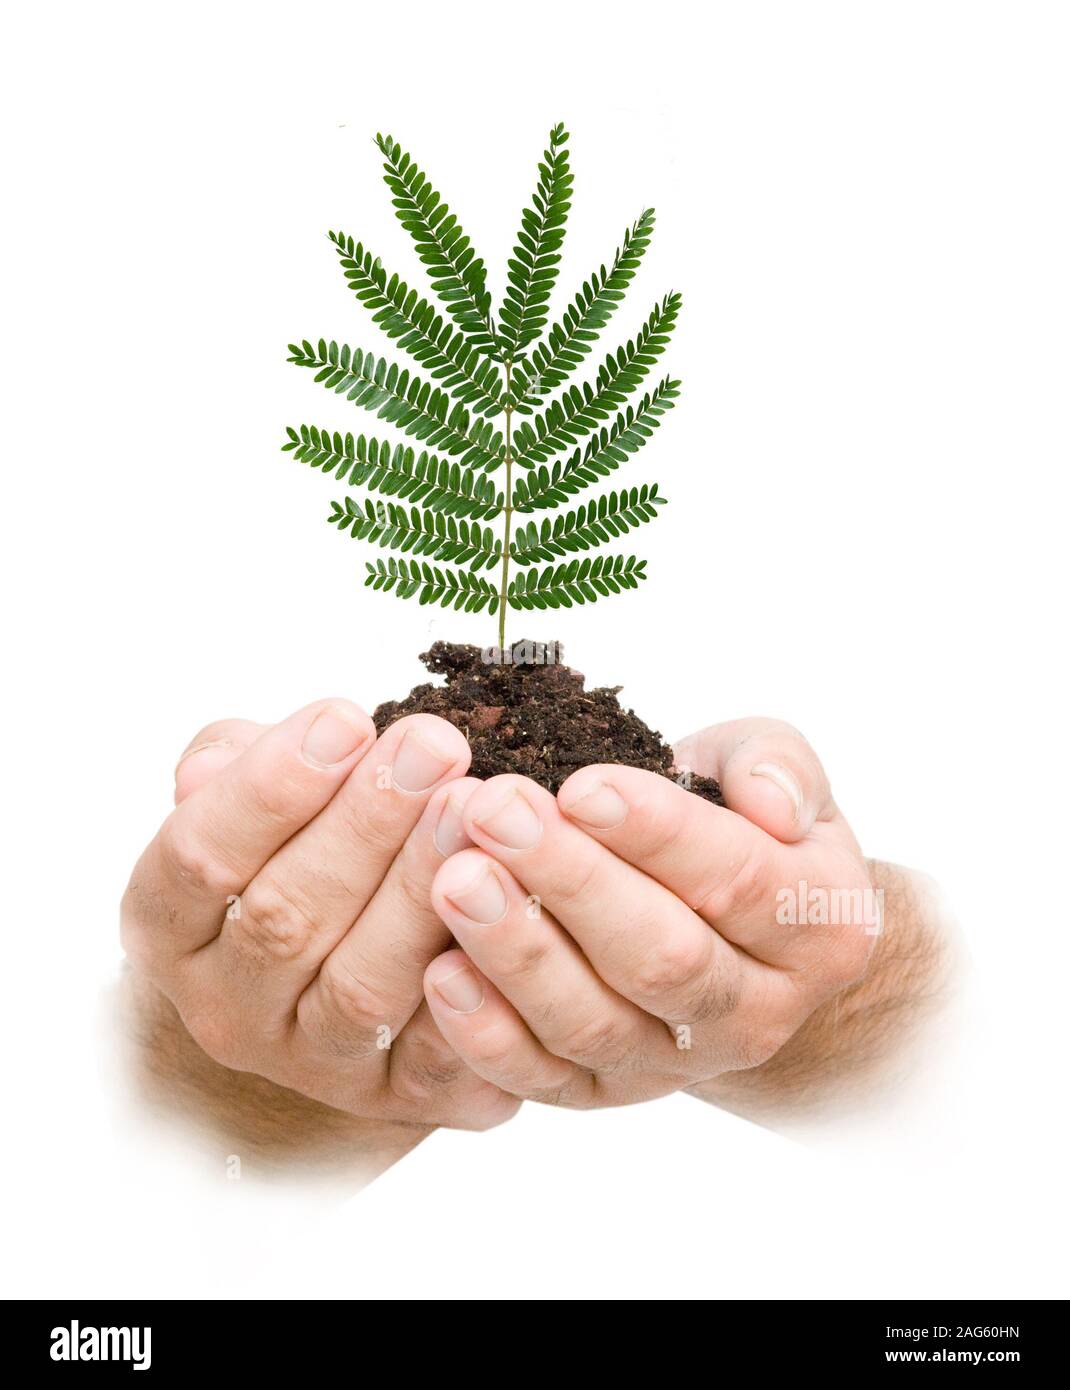 L'analyse de l'arbre dans la main comme un symbole de protection de la nature Banque D'Images